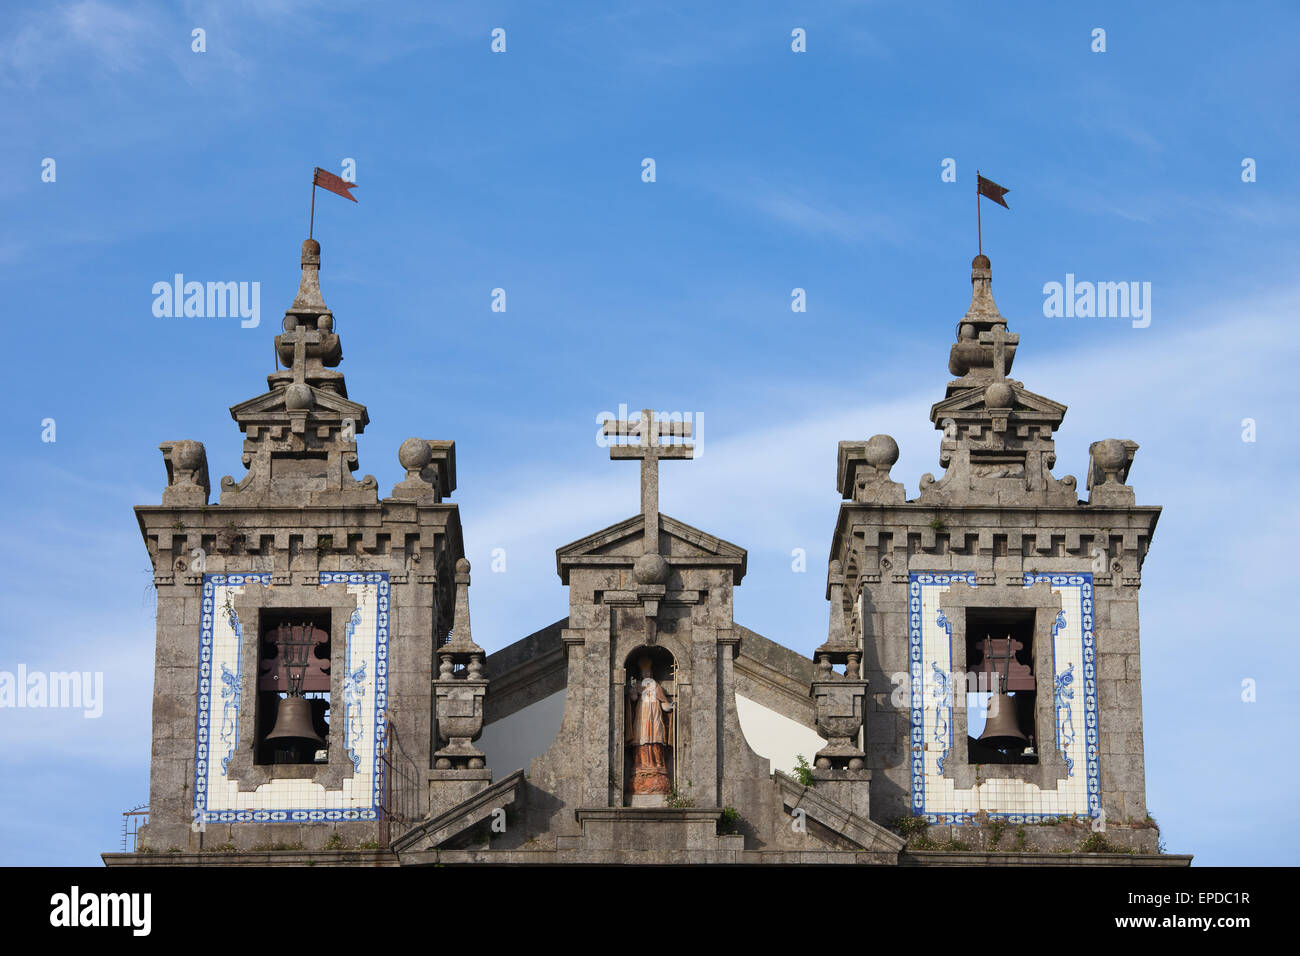 Iglesia de San Ildefonso (Igreja de Santo Ildefonso) campanarios en Porto, Oporto, Portugal, de estilo barroco, del siglo xviii arachîta Foto de stock